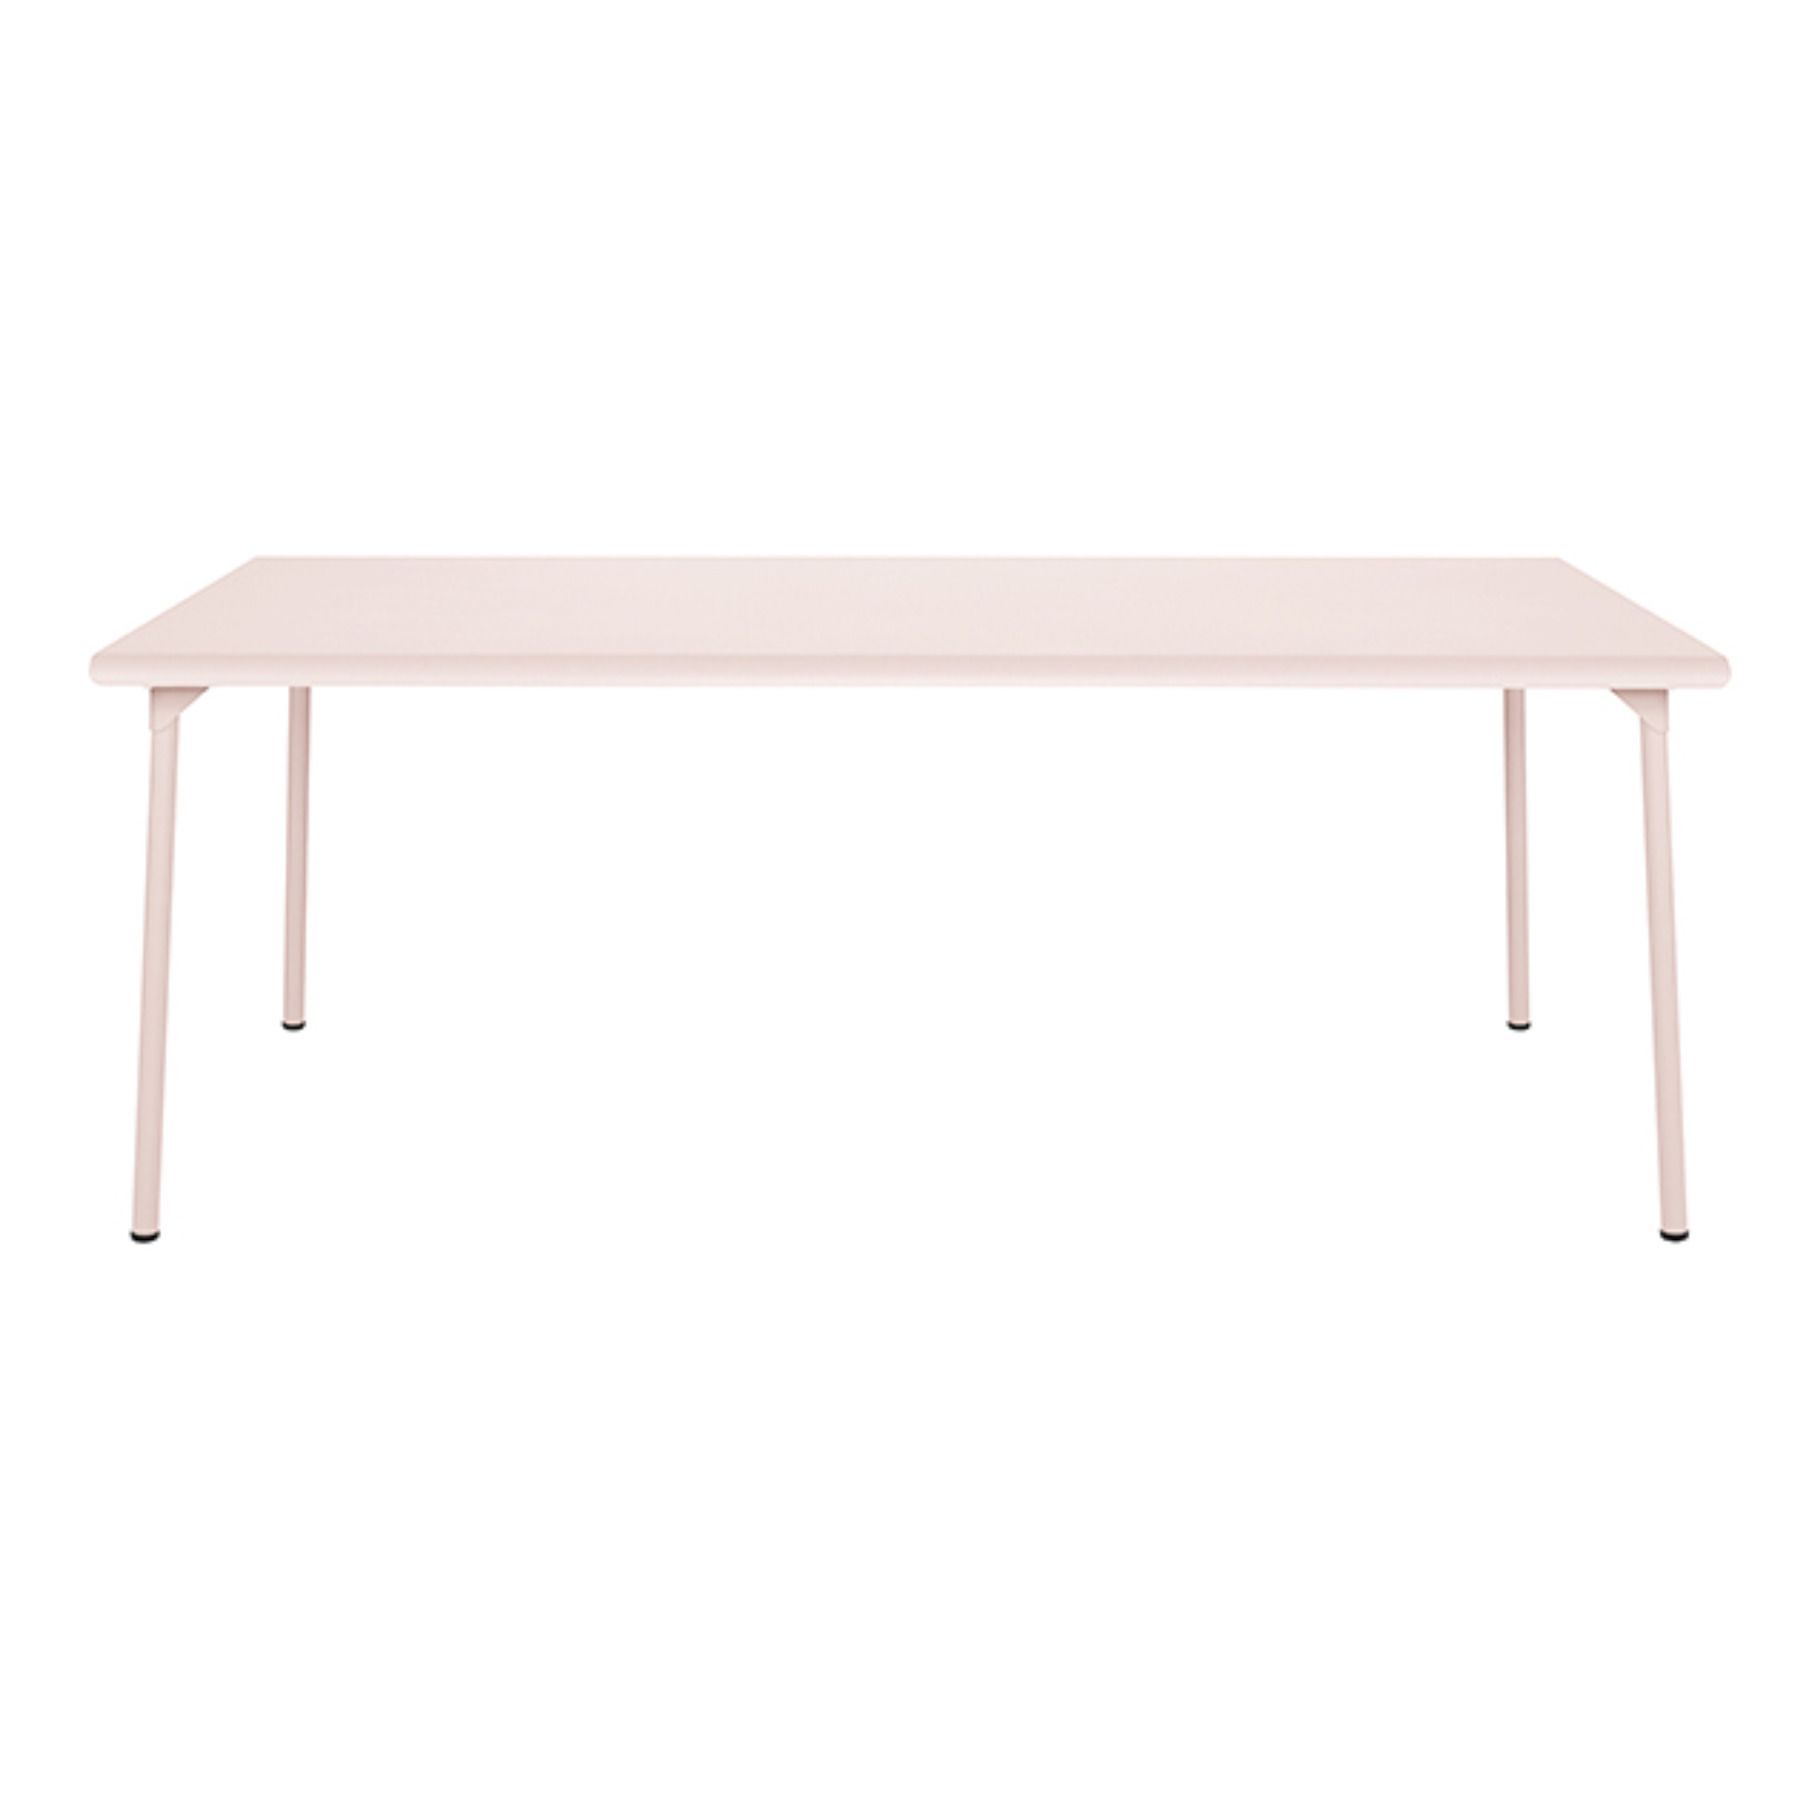 Tolix - Table outdoor Patio en inox - 200x100 cm - Rose poudré